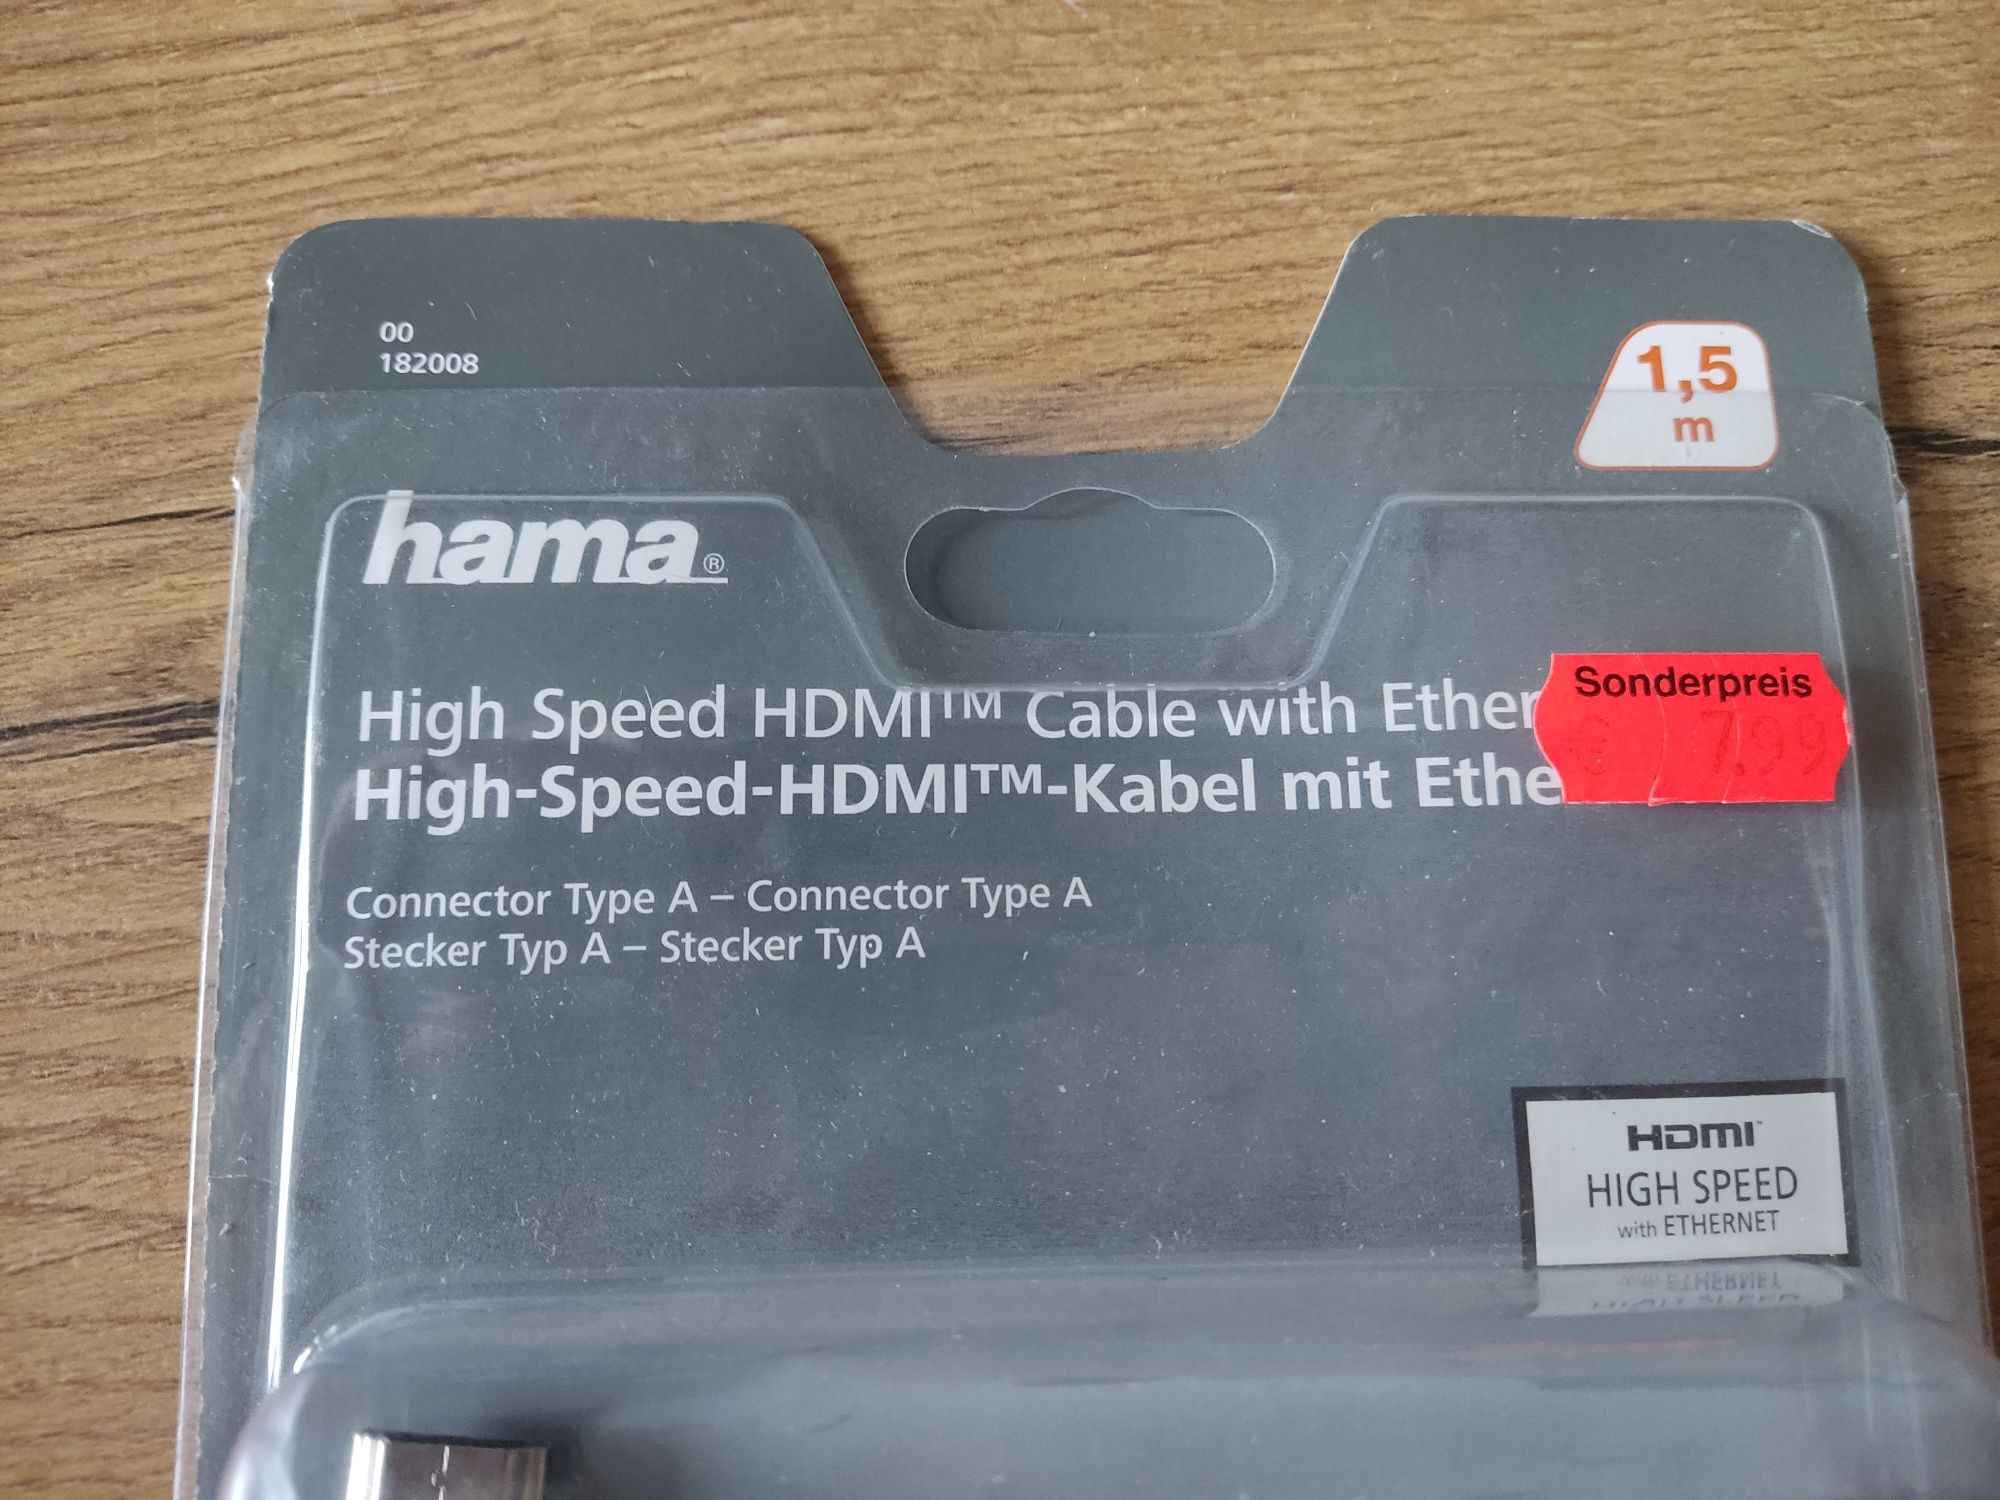 Kabel HDMI -Hdmi 1.5 metra